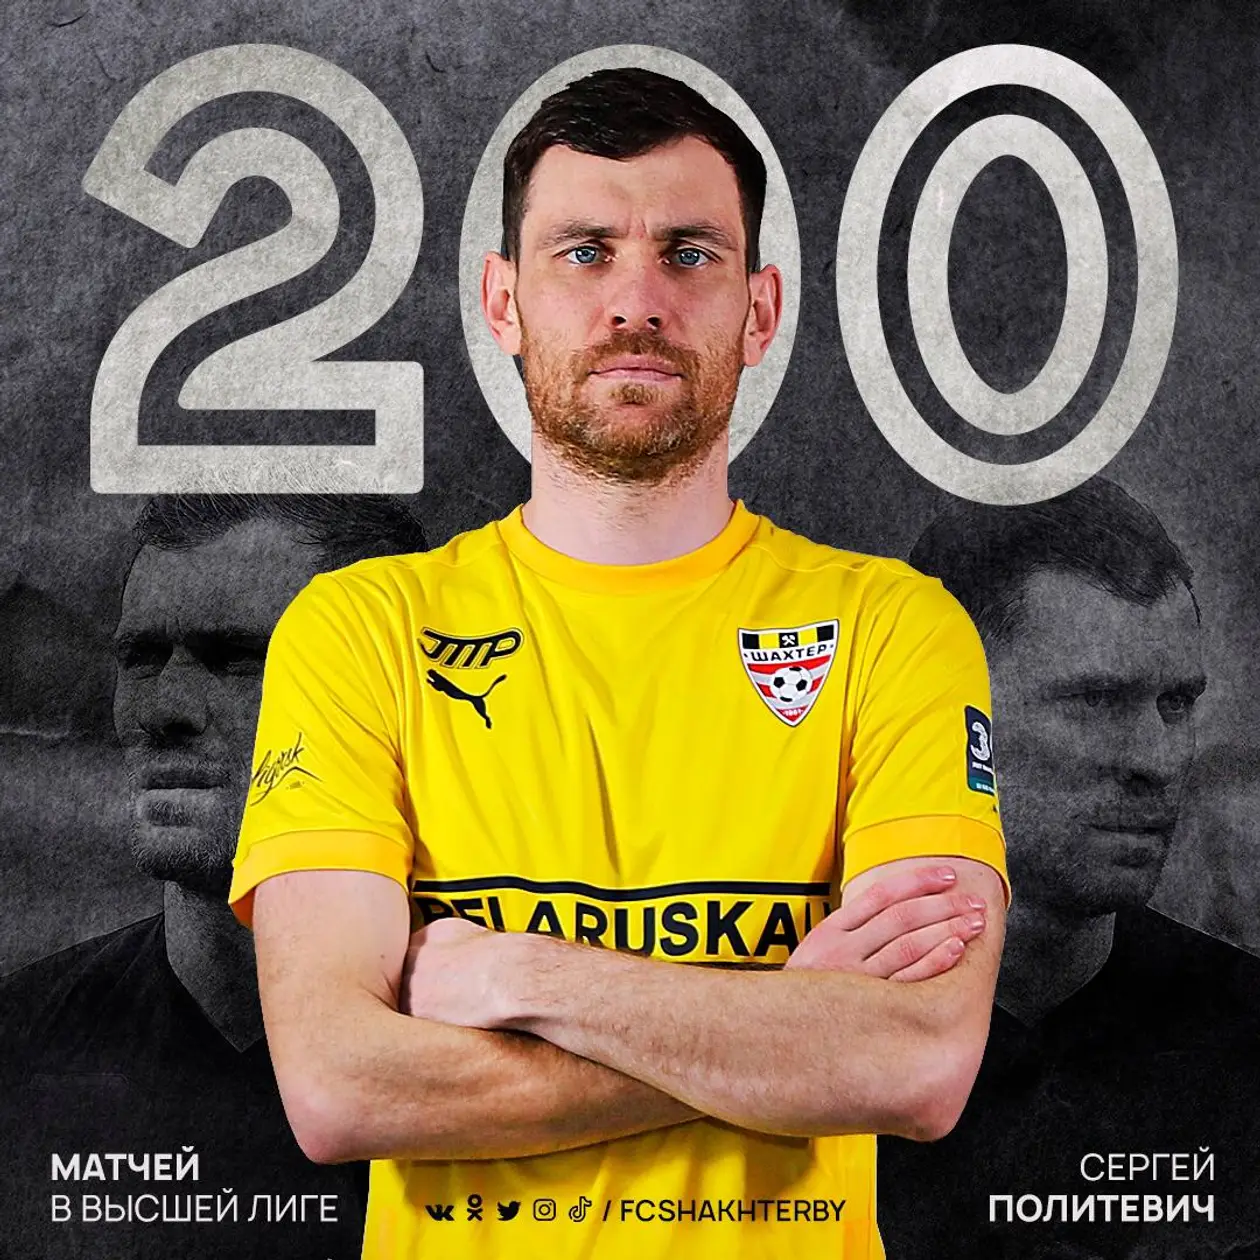 Политевич провел 200 матчей в высшей лиге